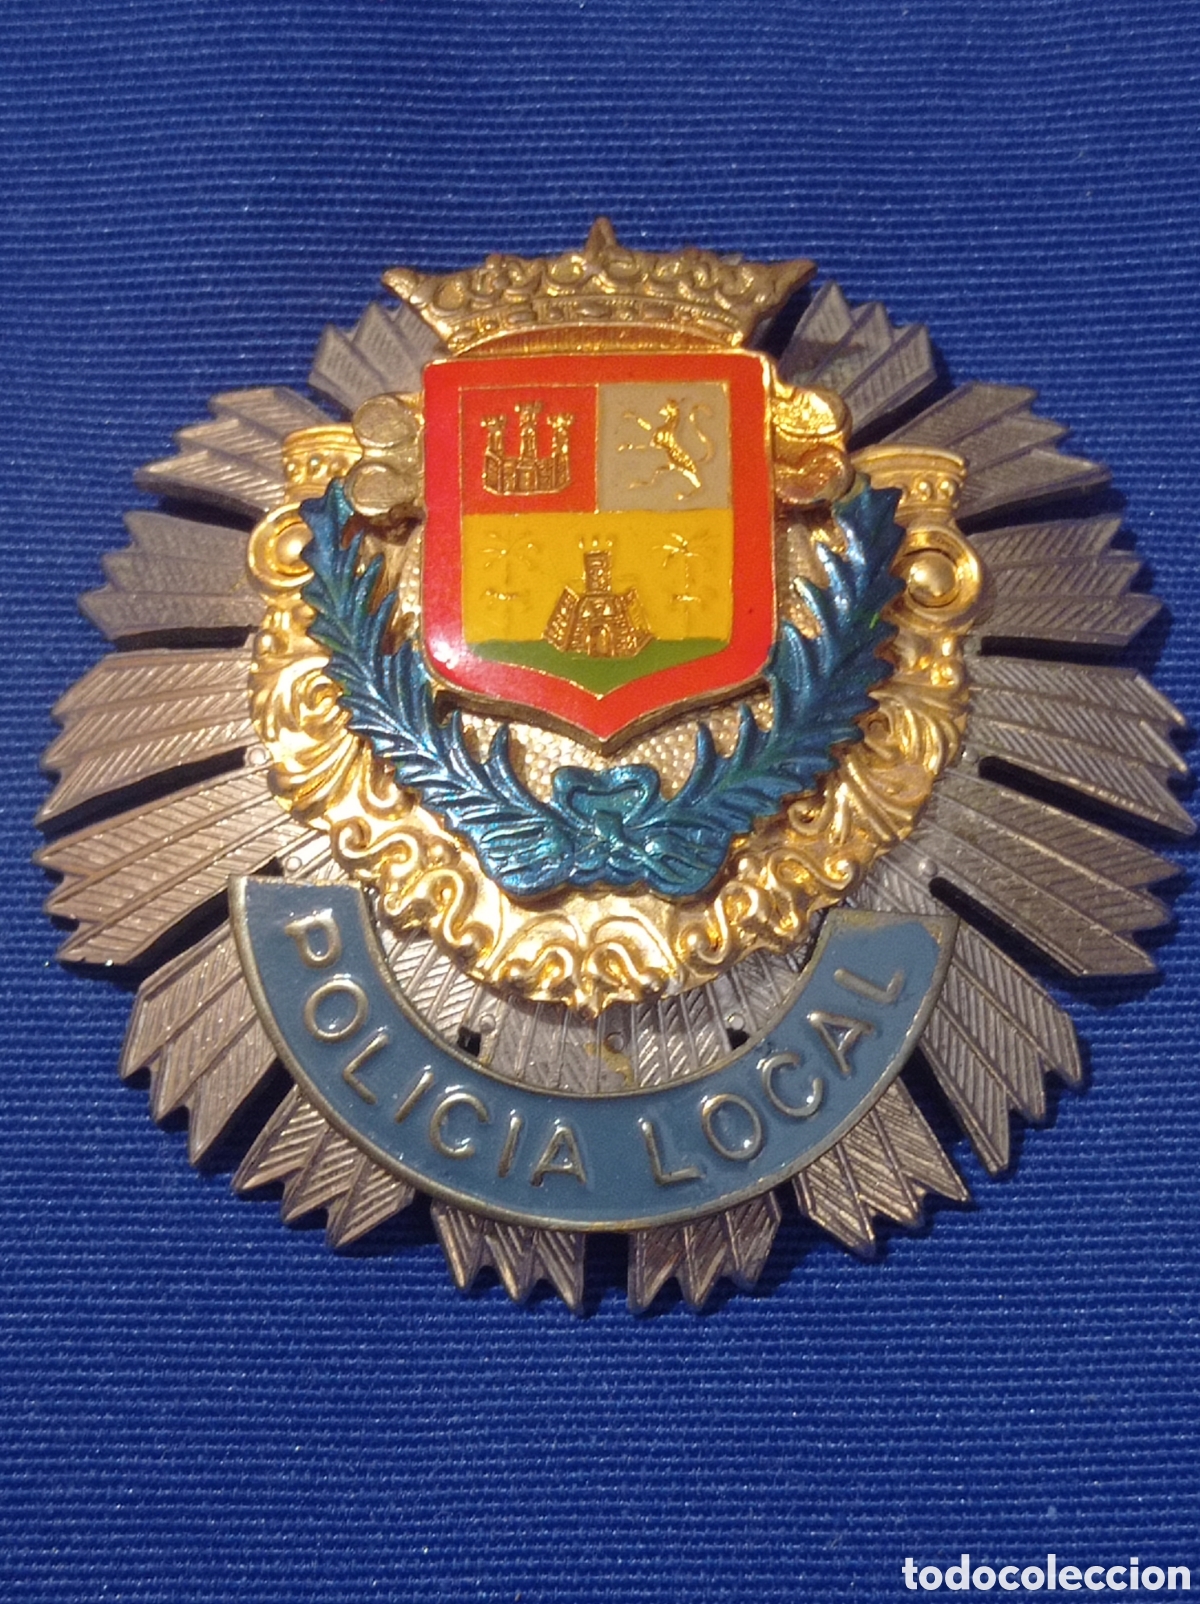 Placa Policía Municipal Bilbao (escudo antiguo)